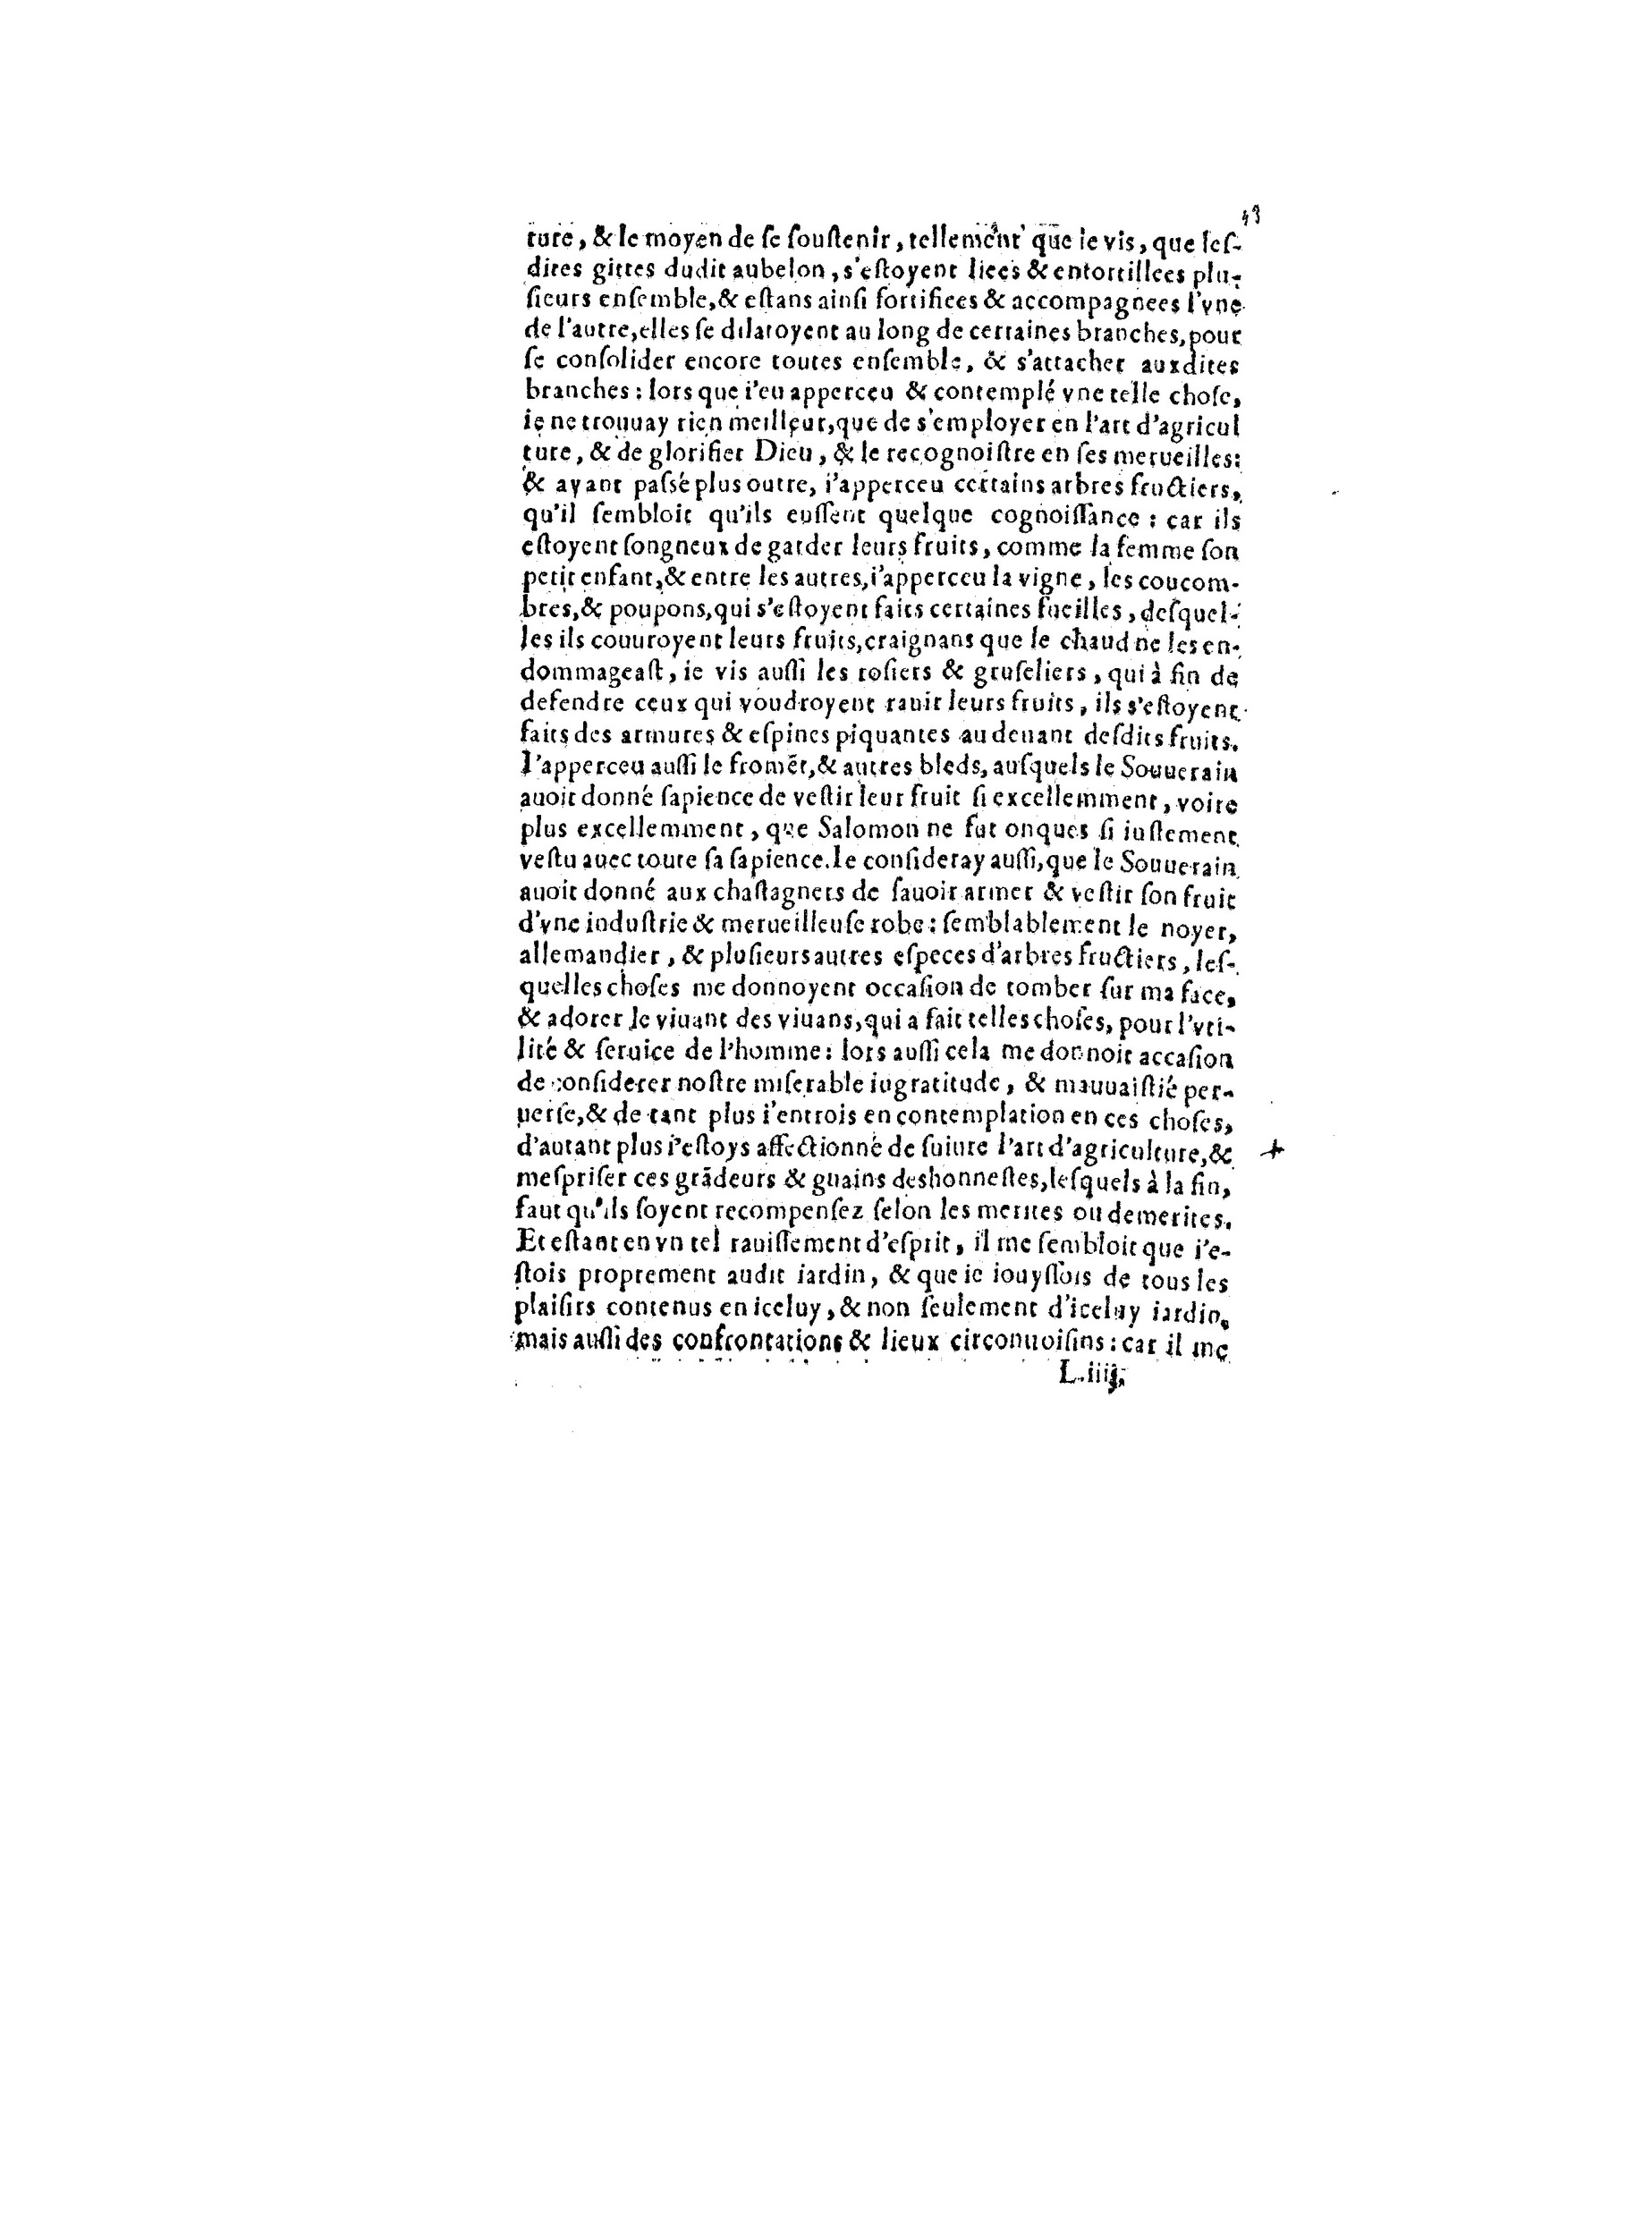 1563 Recepte veritable Berton_BNF_Page_090.jpg